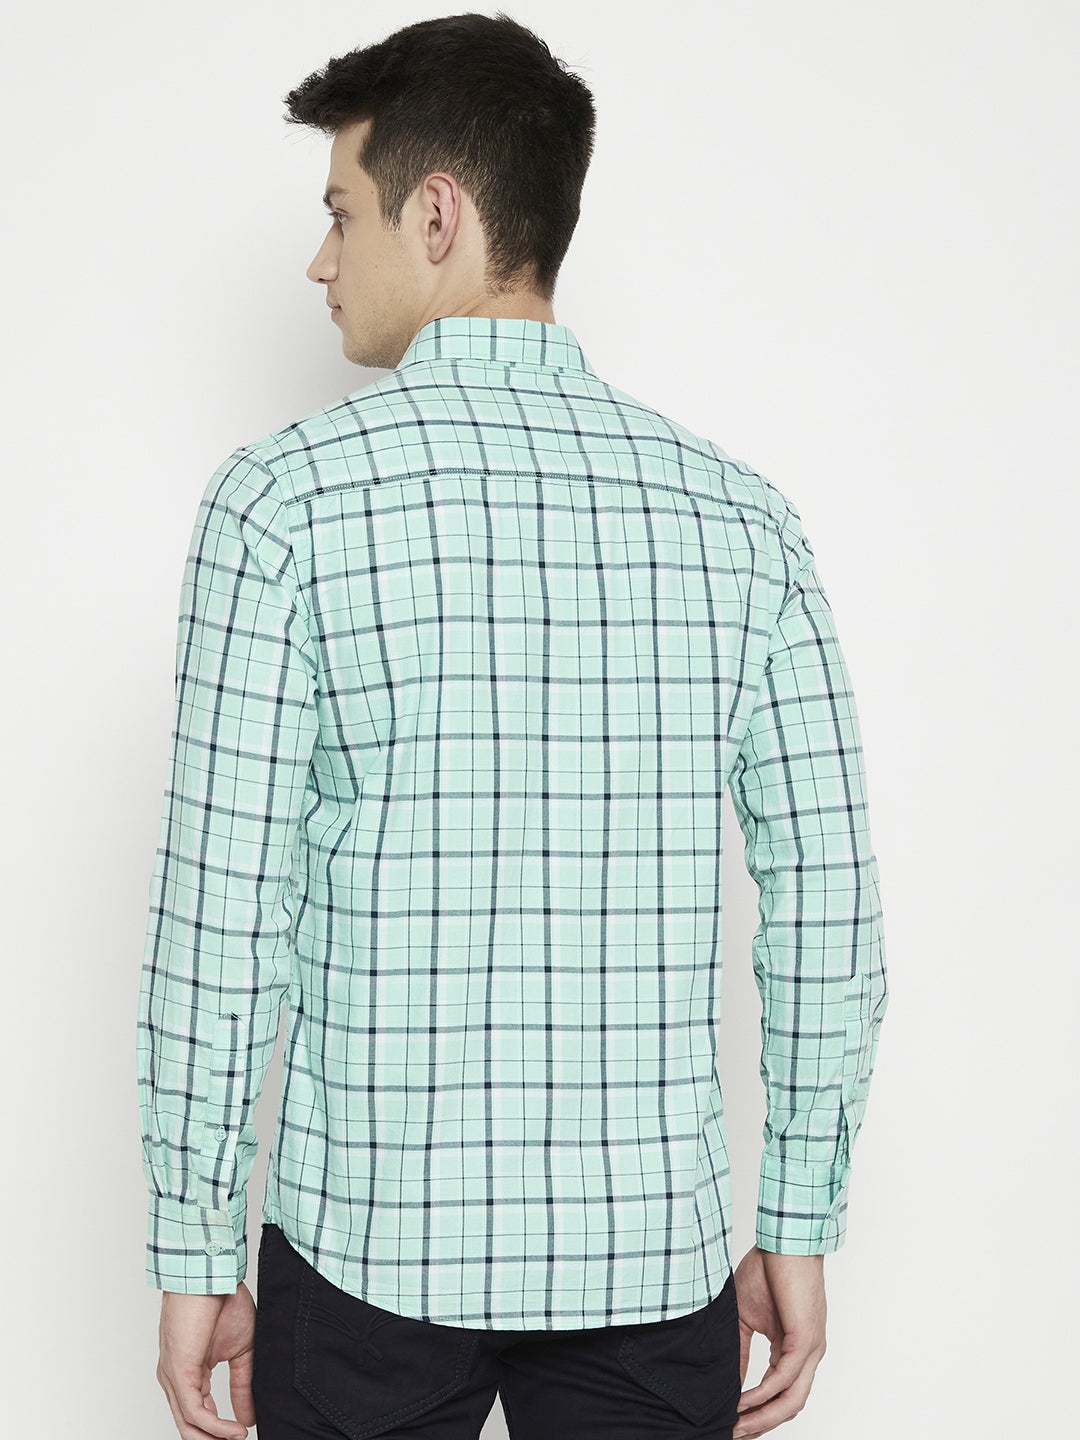 Mint Green Checked Slim Fit shirt - Men Shirts